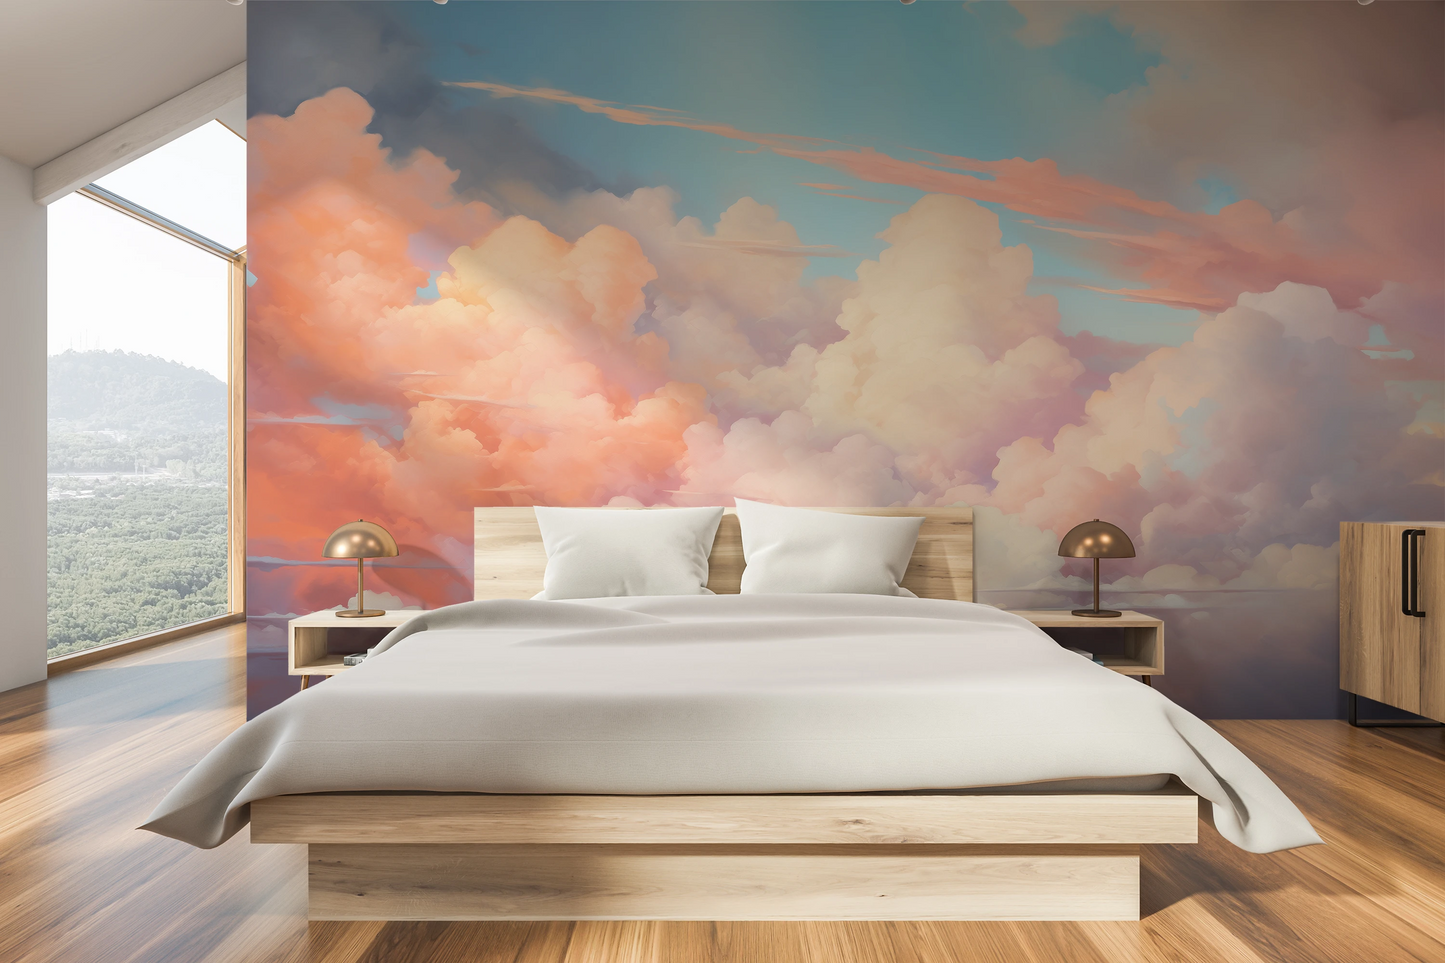 Fototapeta malowana o nazwie Cotton Candy Skies pokazana w aranżacji wnętrza.